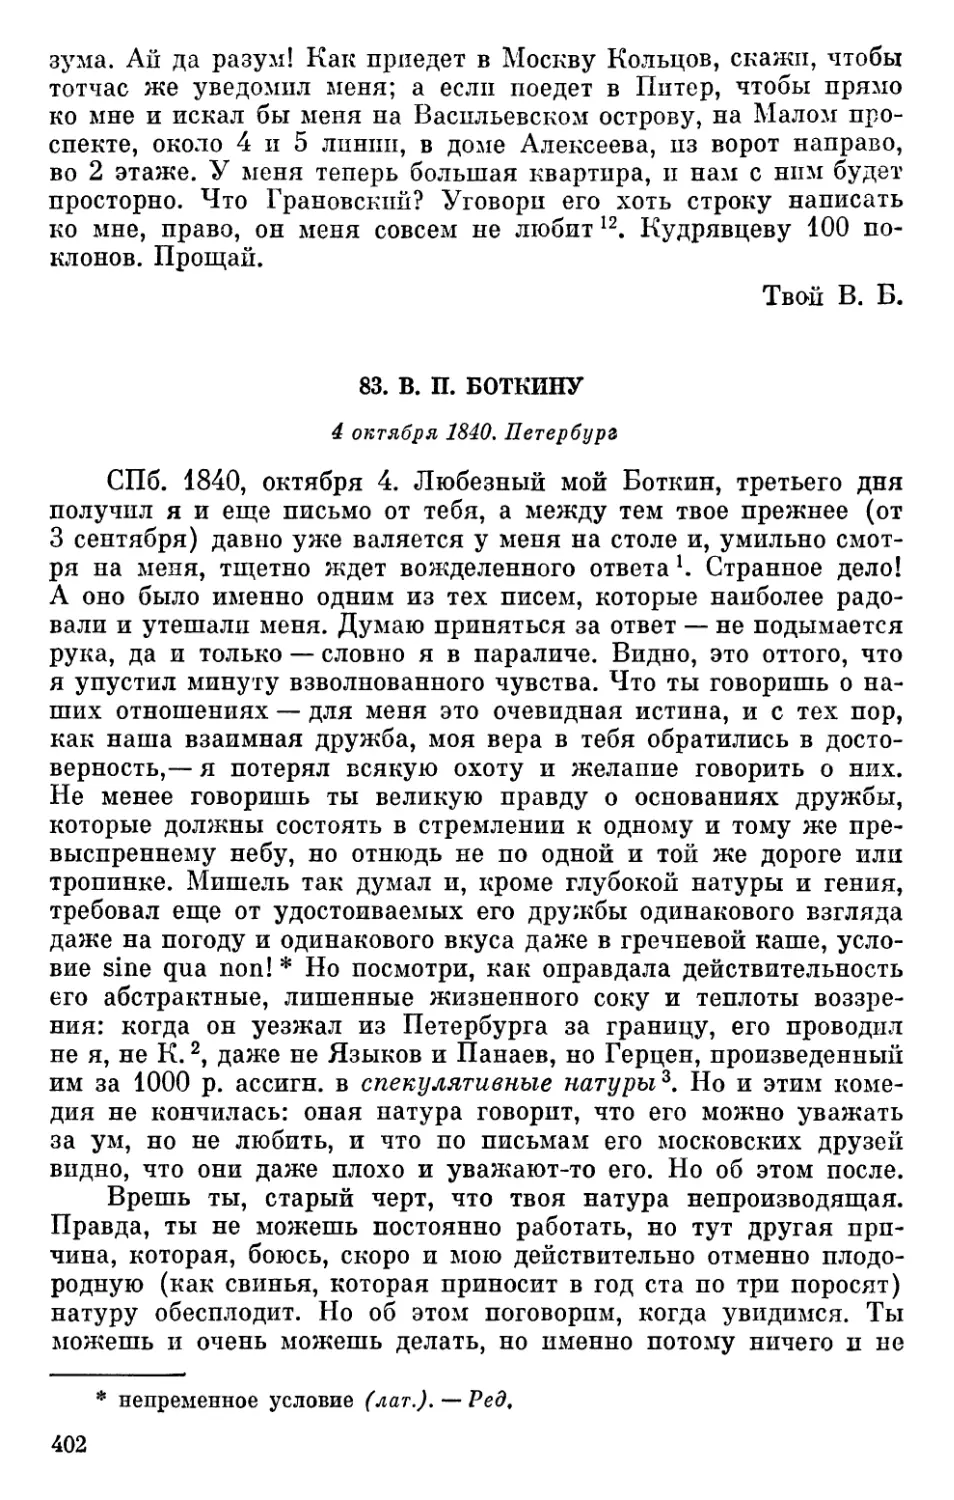 83. В. П. Боткину. 4 октября 1840